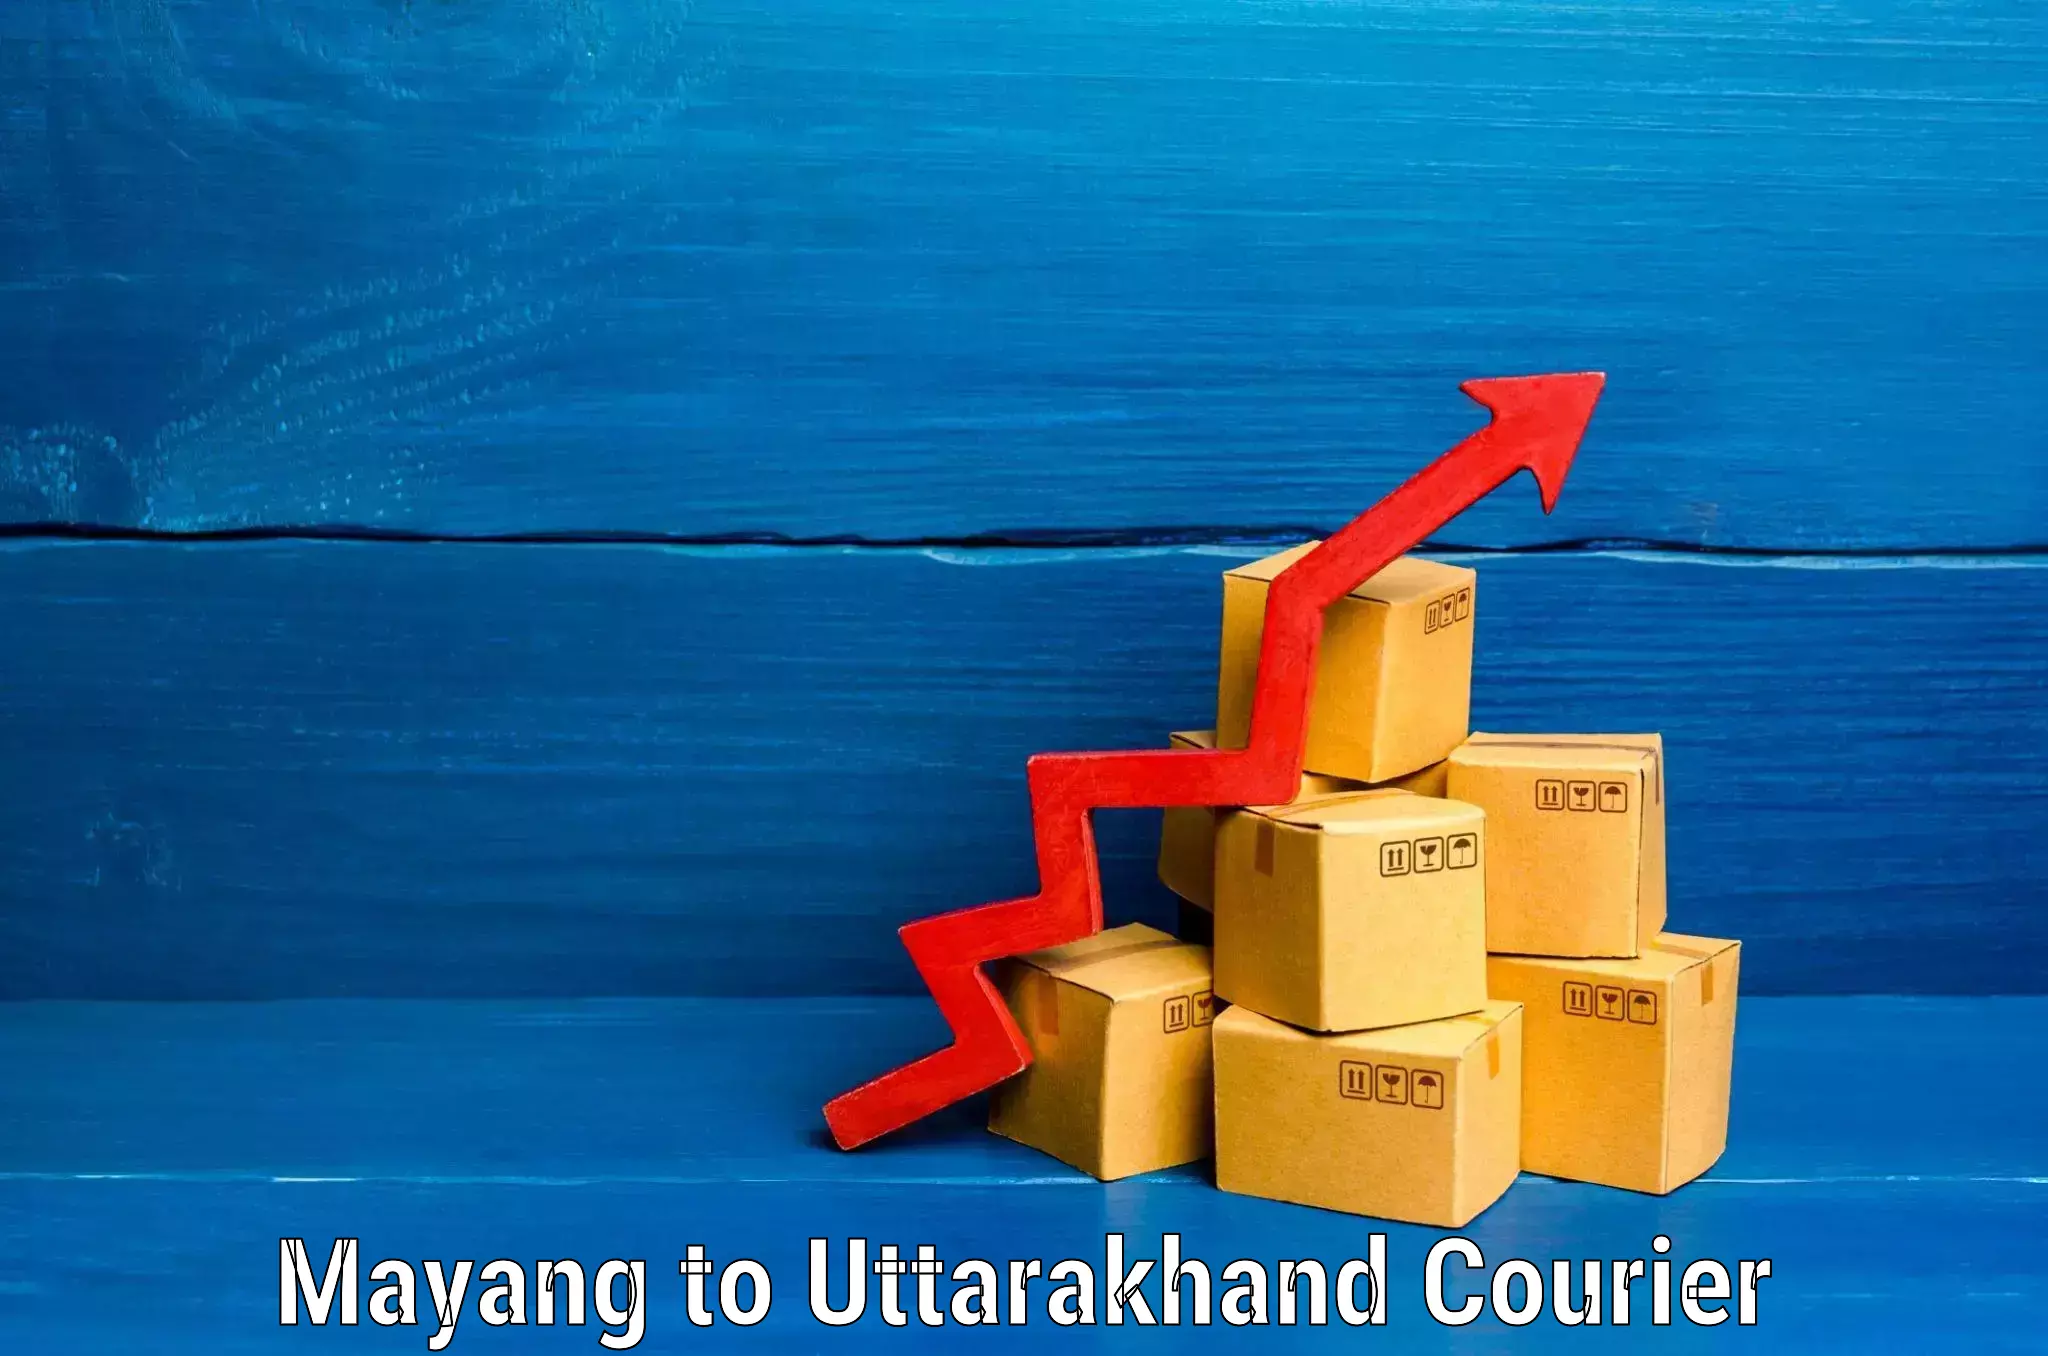 Hassle-free luggage shipping Mayang to Uttarakhand